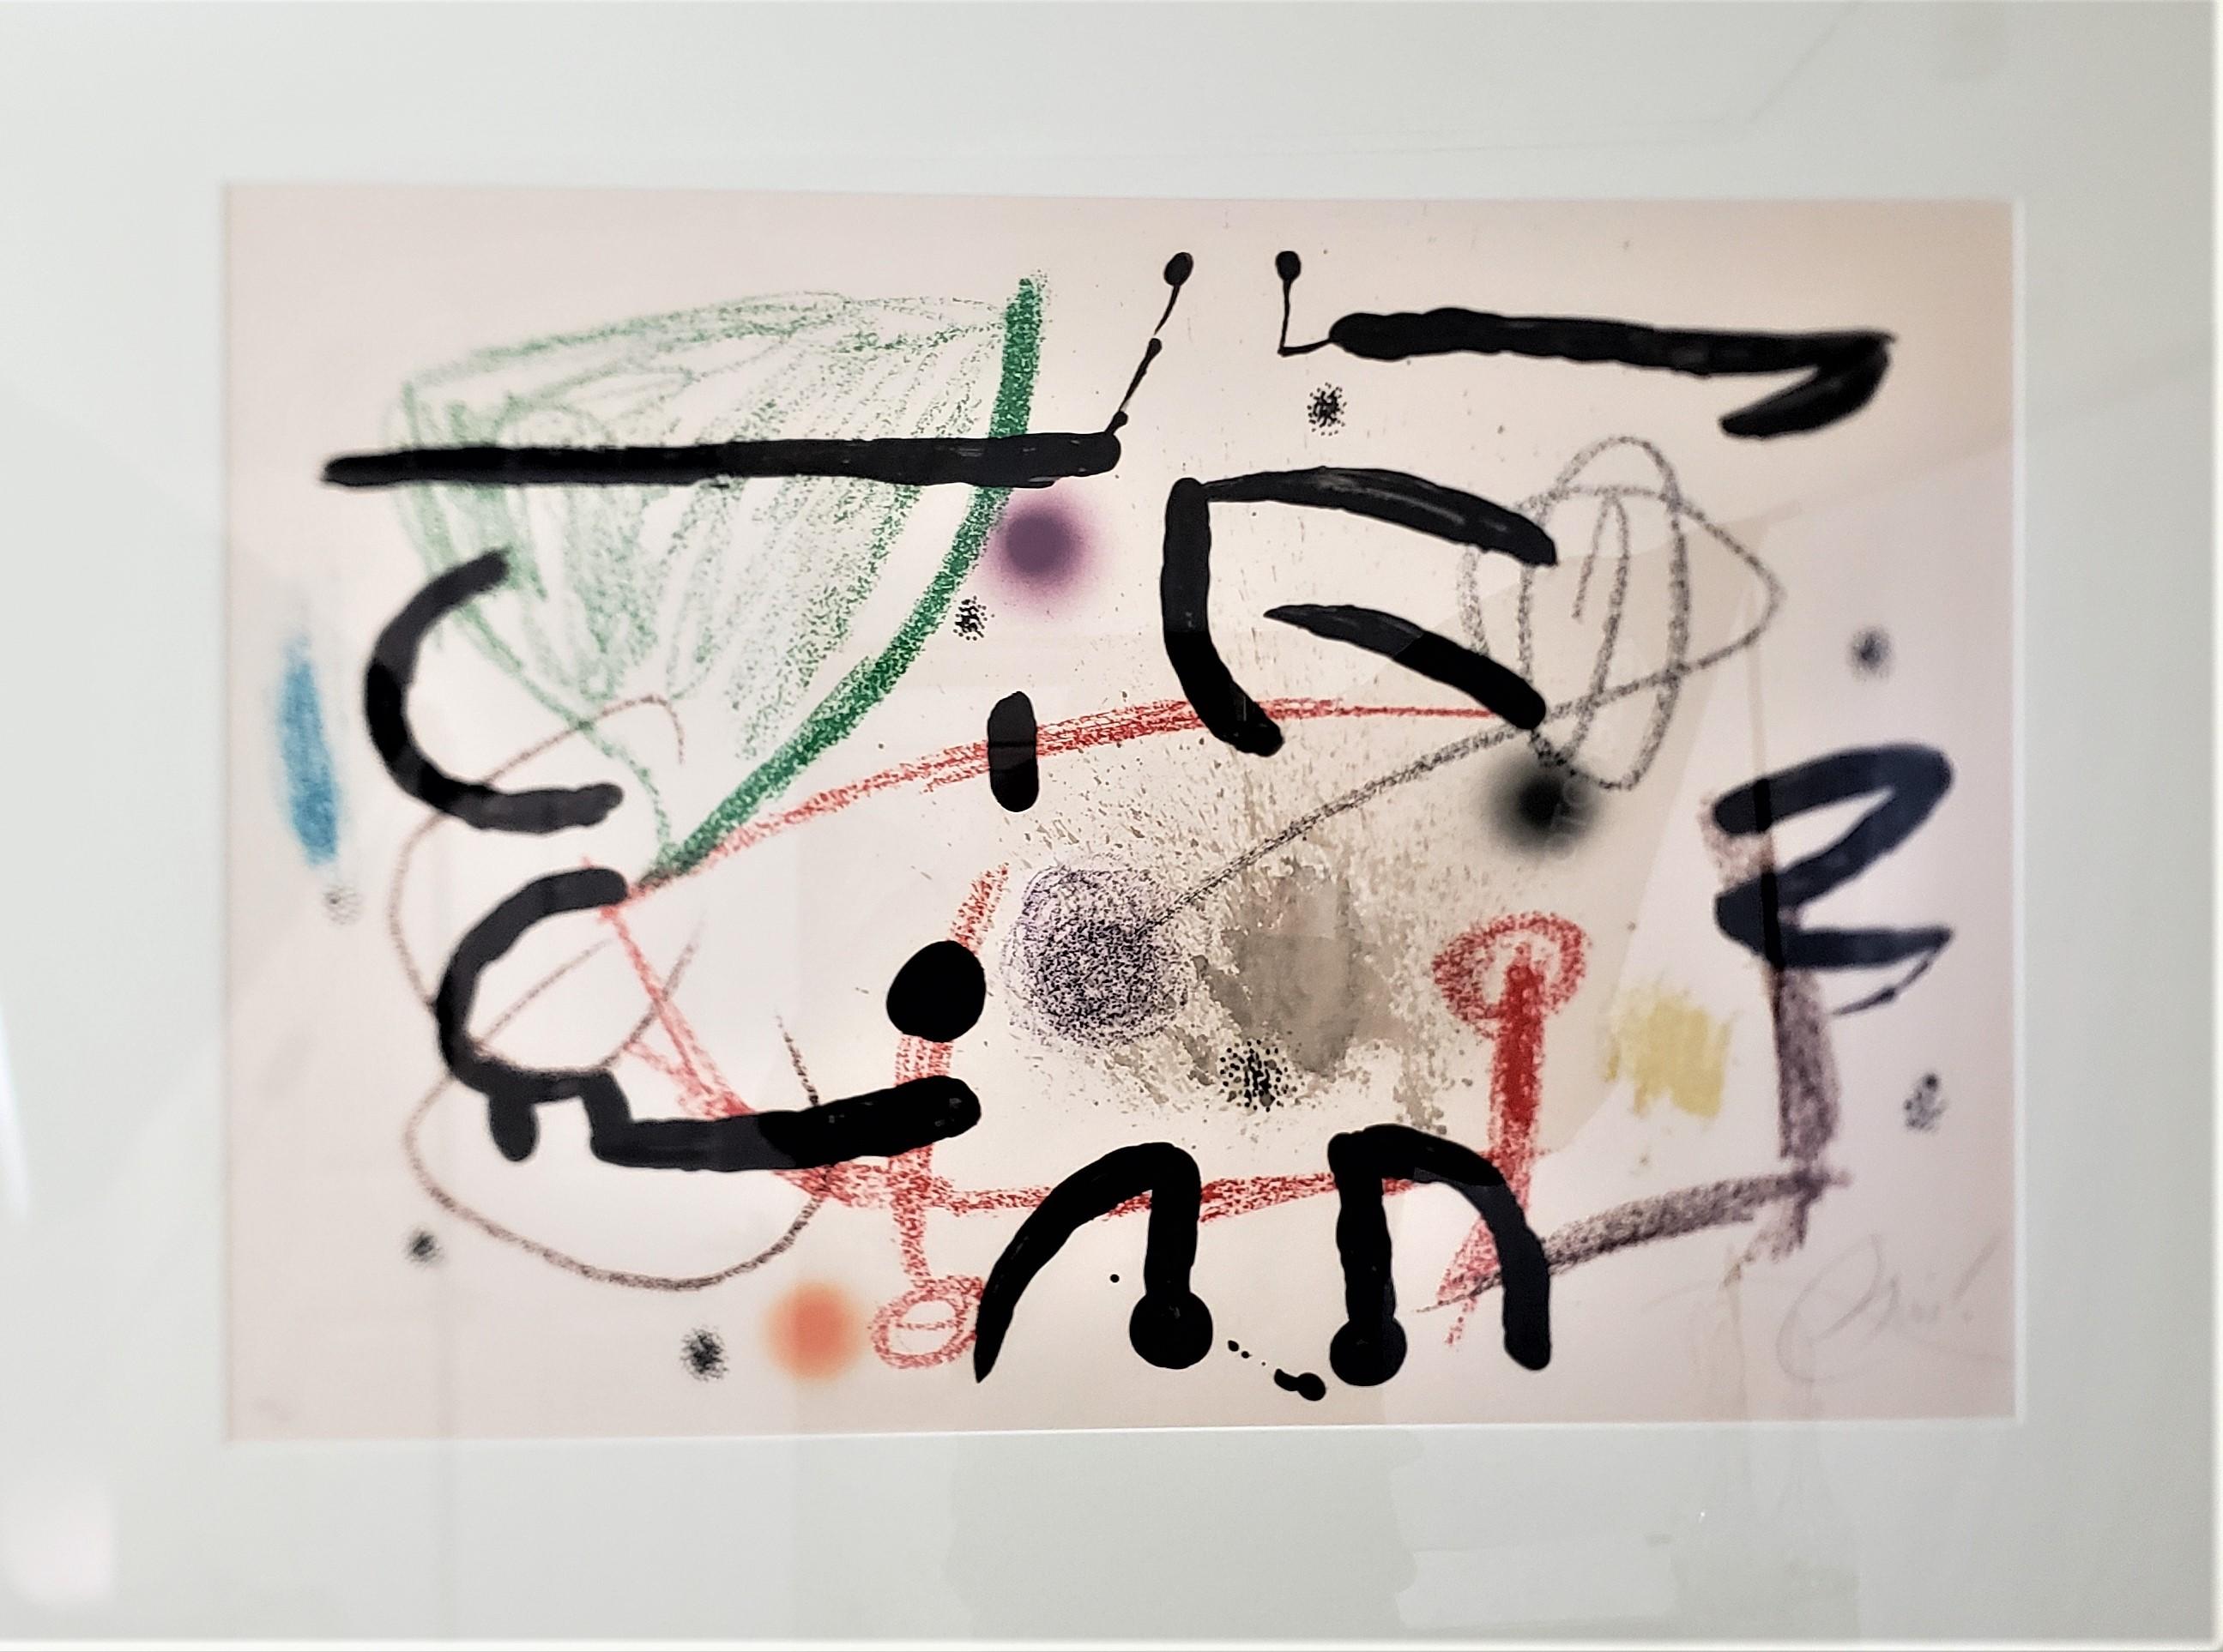 Cette lithographie signée et numérotée a été réalisée par le célèbre artiste espagnol Joan Miro. Elle date de 1975 et est réalisée dans son style moderniste abstrait. Cette grande lithographie est intitulée 